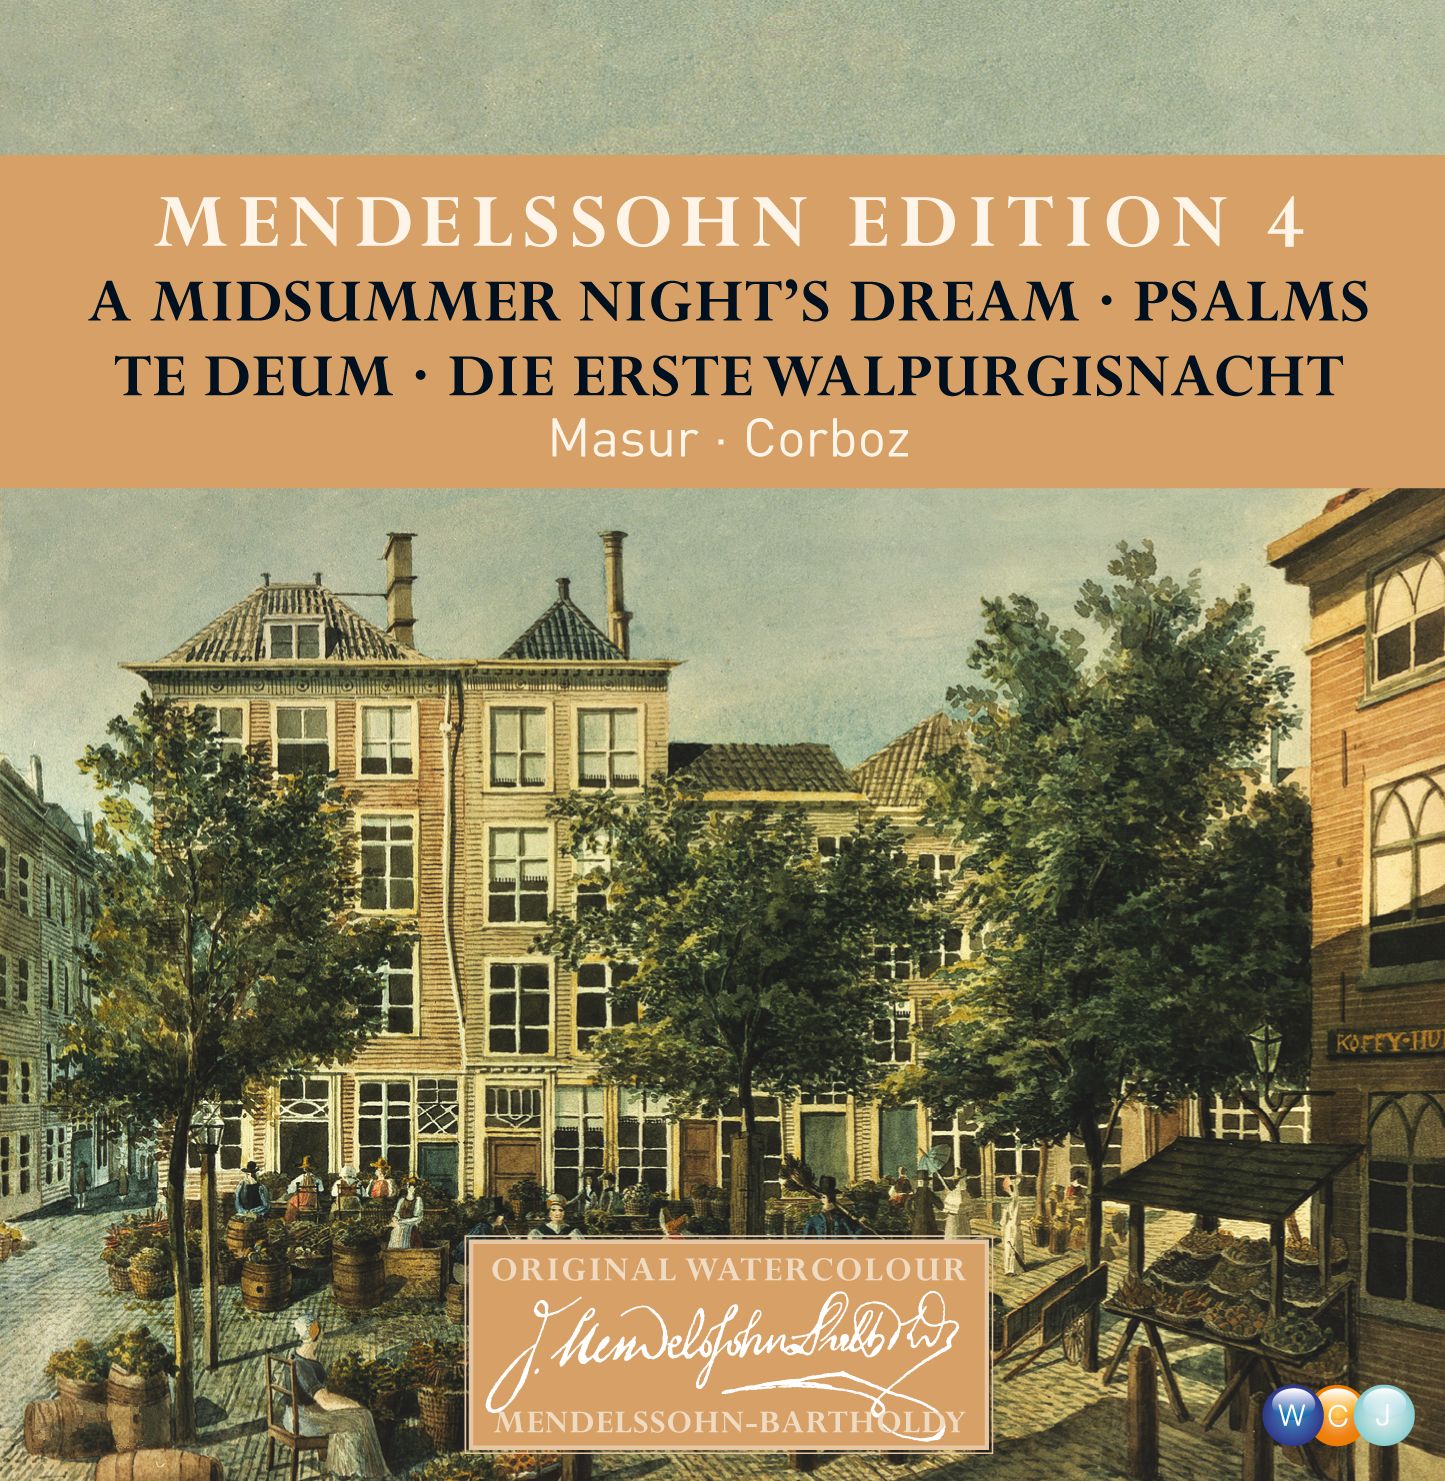 A Midsummer Night's Dream Op.61 : Act 5 "Bei des Feuers mattem Flimmern"